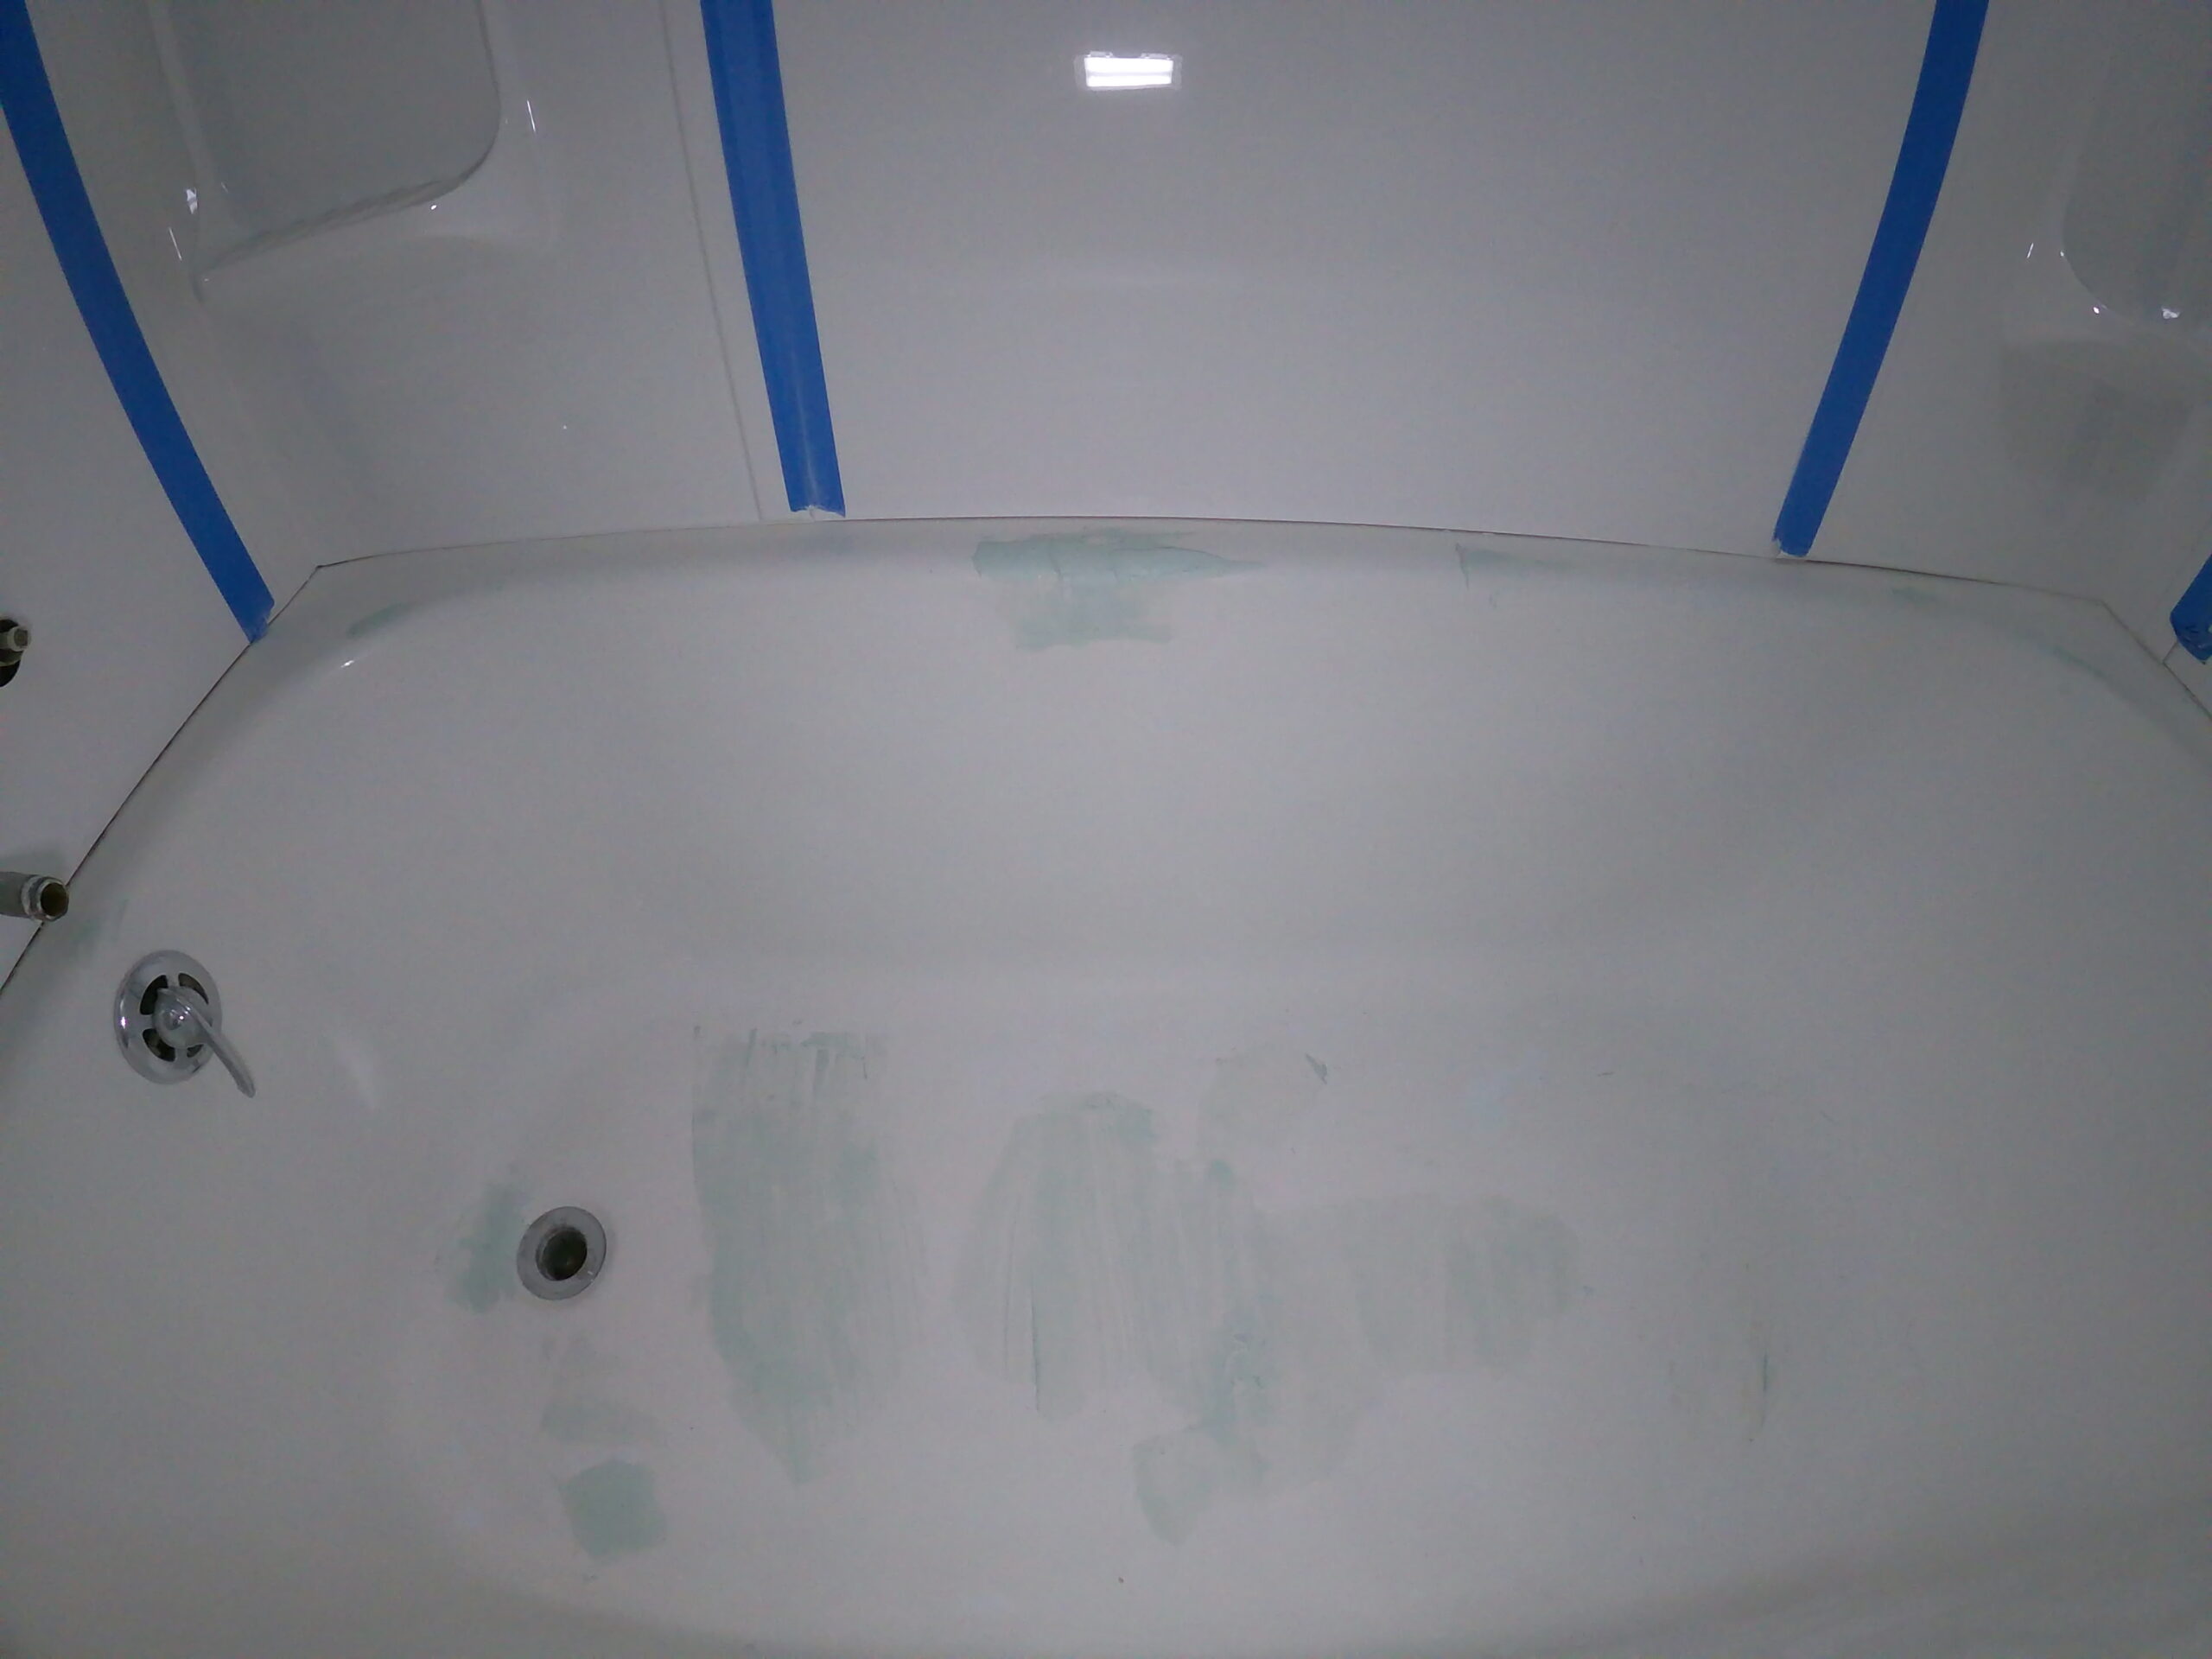 two-part-marine-grade-filler-for-bathtub-refinishing